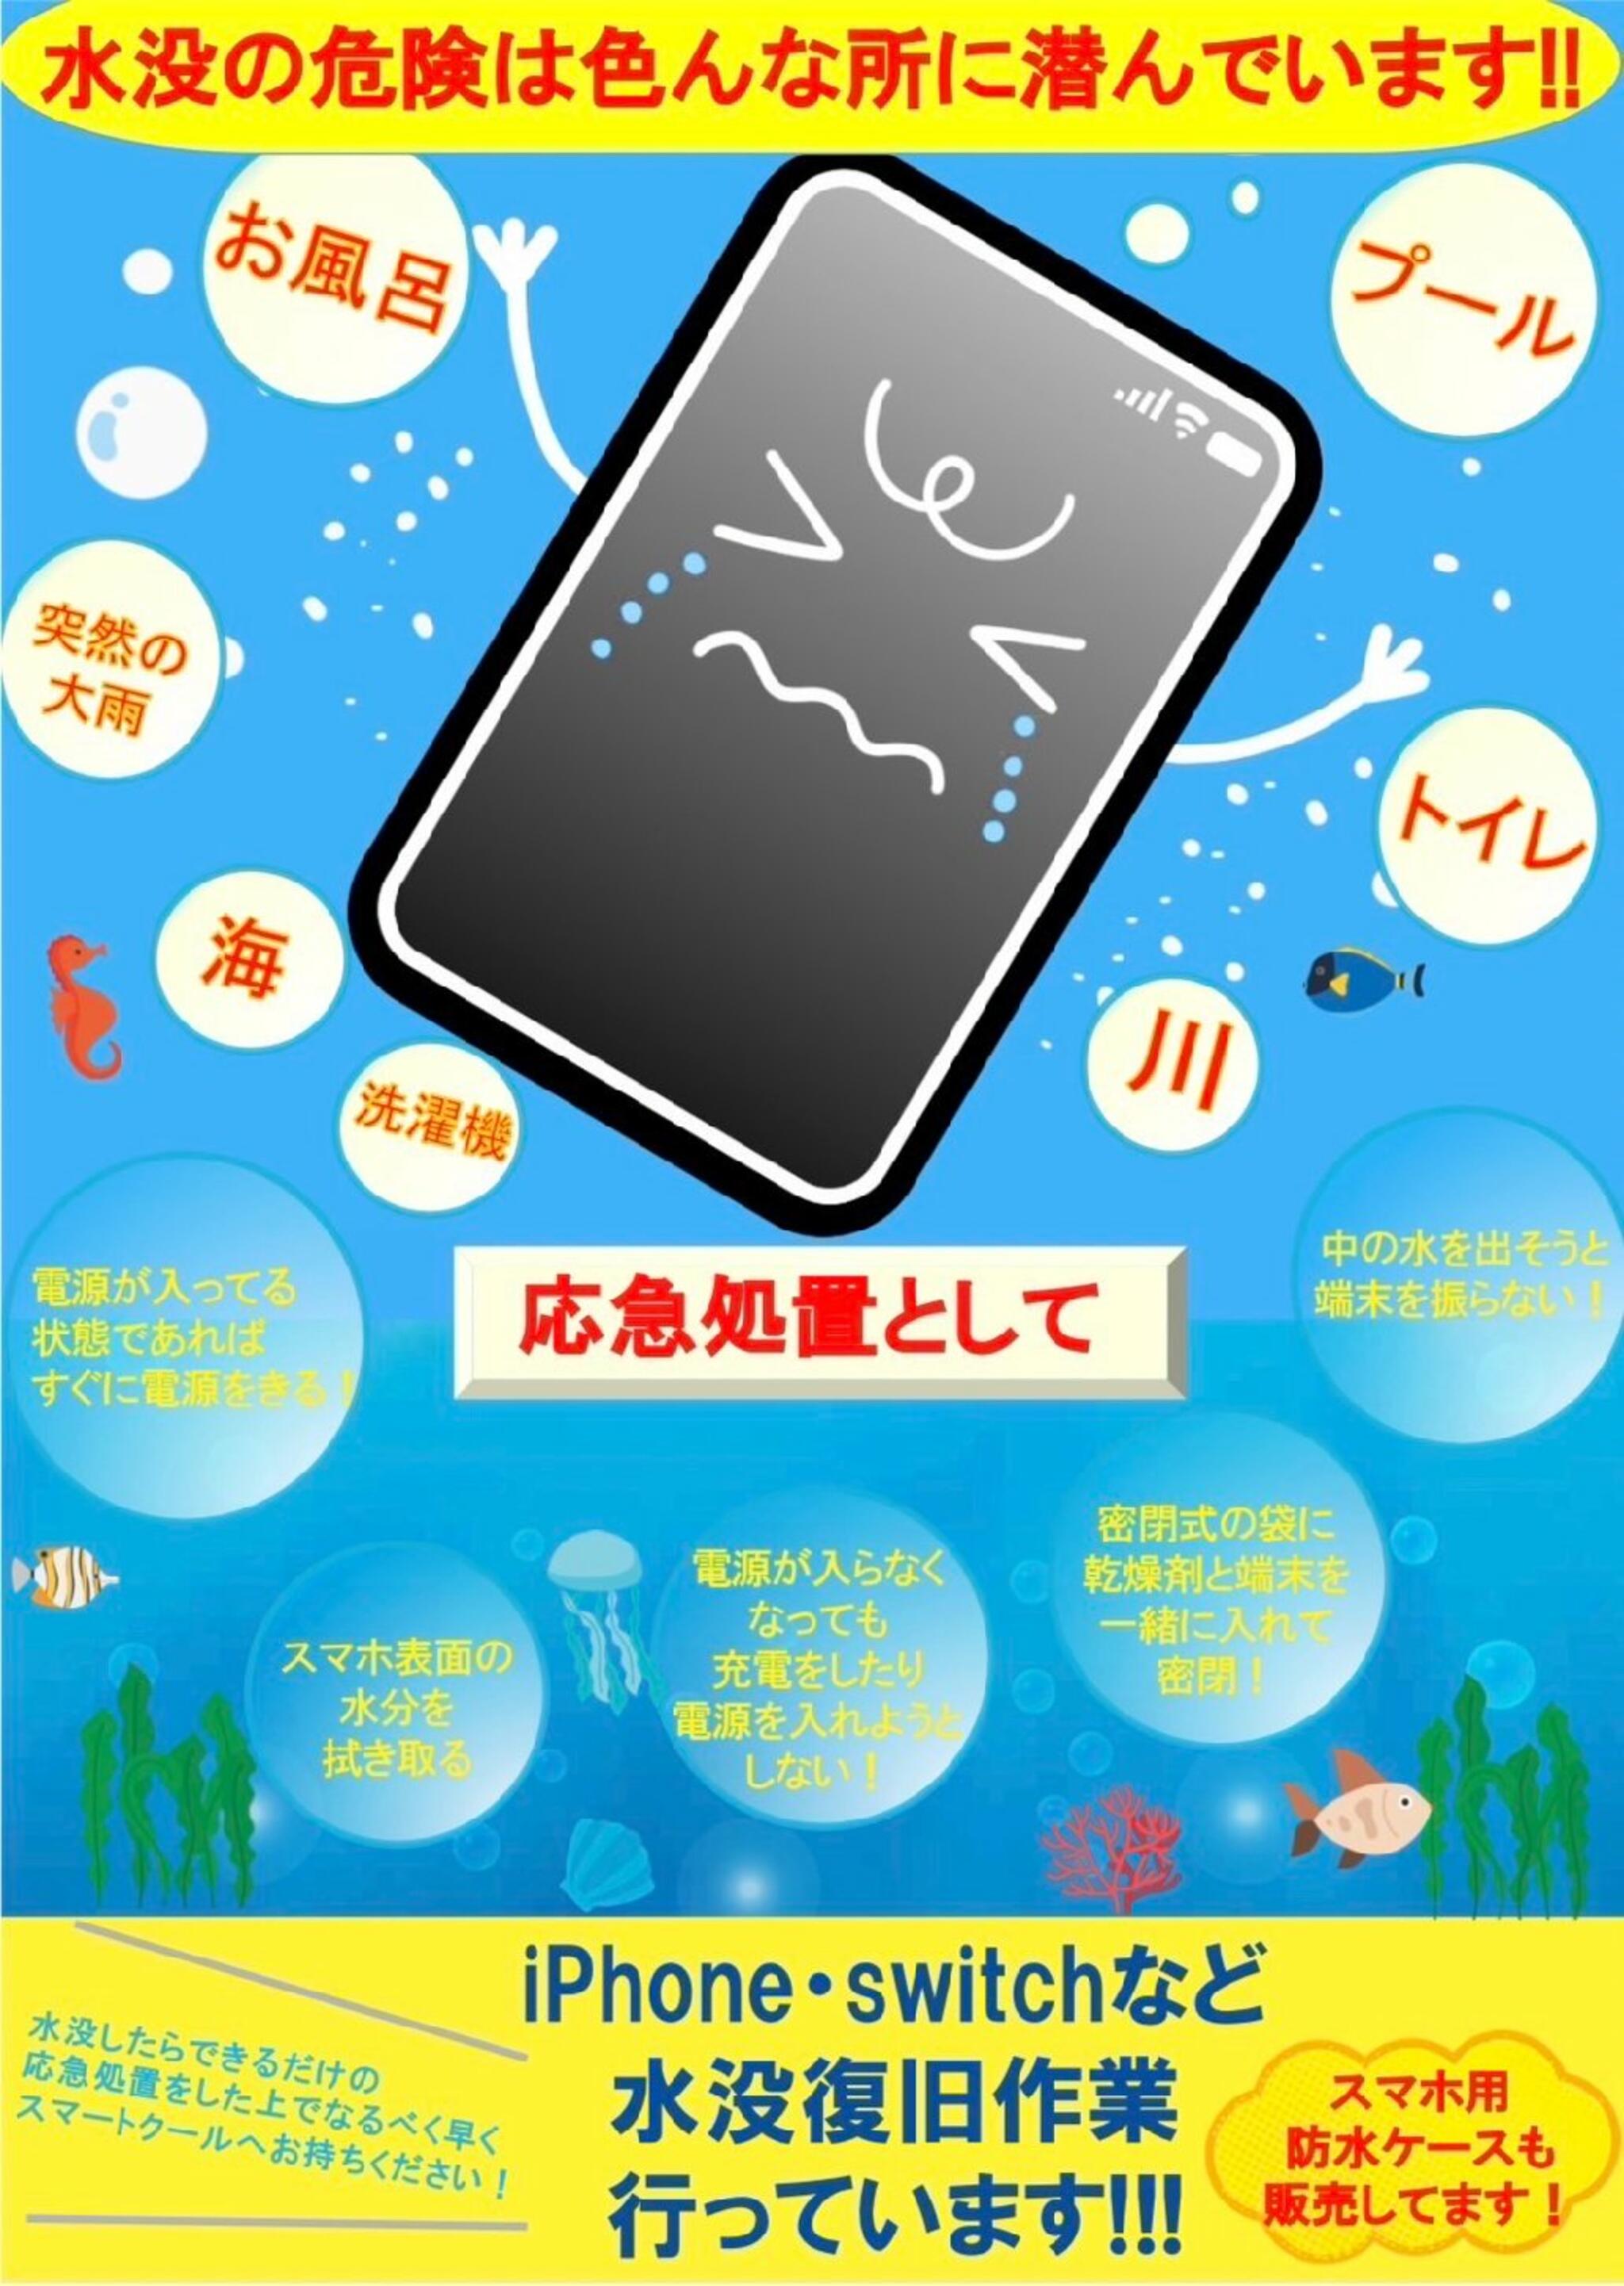 iPhone・iPad・Switch修理店 スマートクール イオンモール広島祇園店からのお知らせ(天候の崩れに気をつけましょう)に関する写真